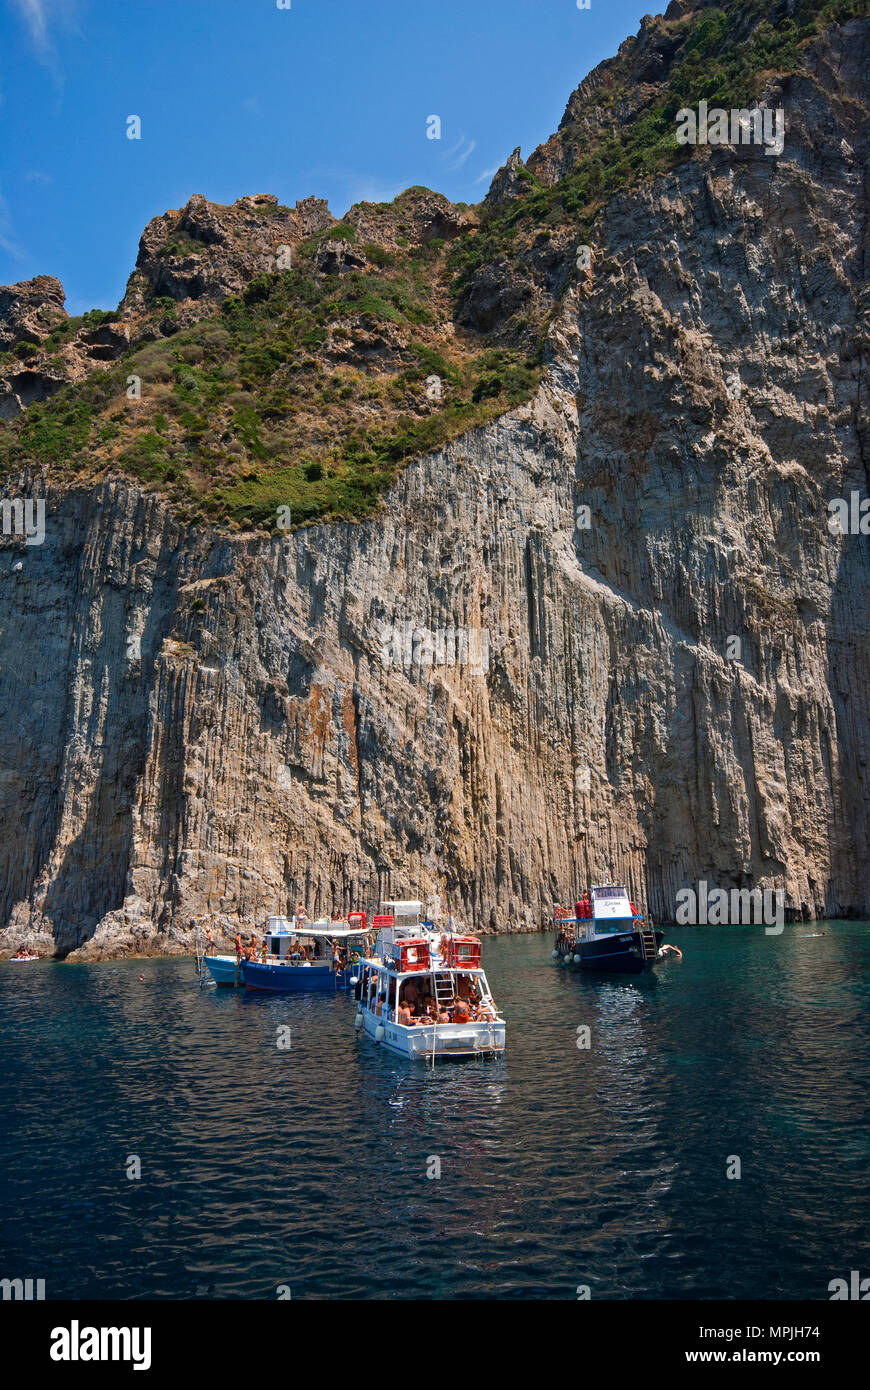 Bateaux touristiques et près de la falaise dite "des cathédrales", l'île de palmarola, lazio, Italie Banque D'Images